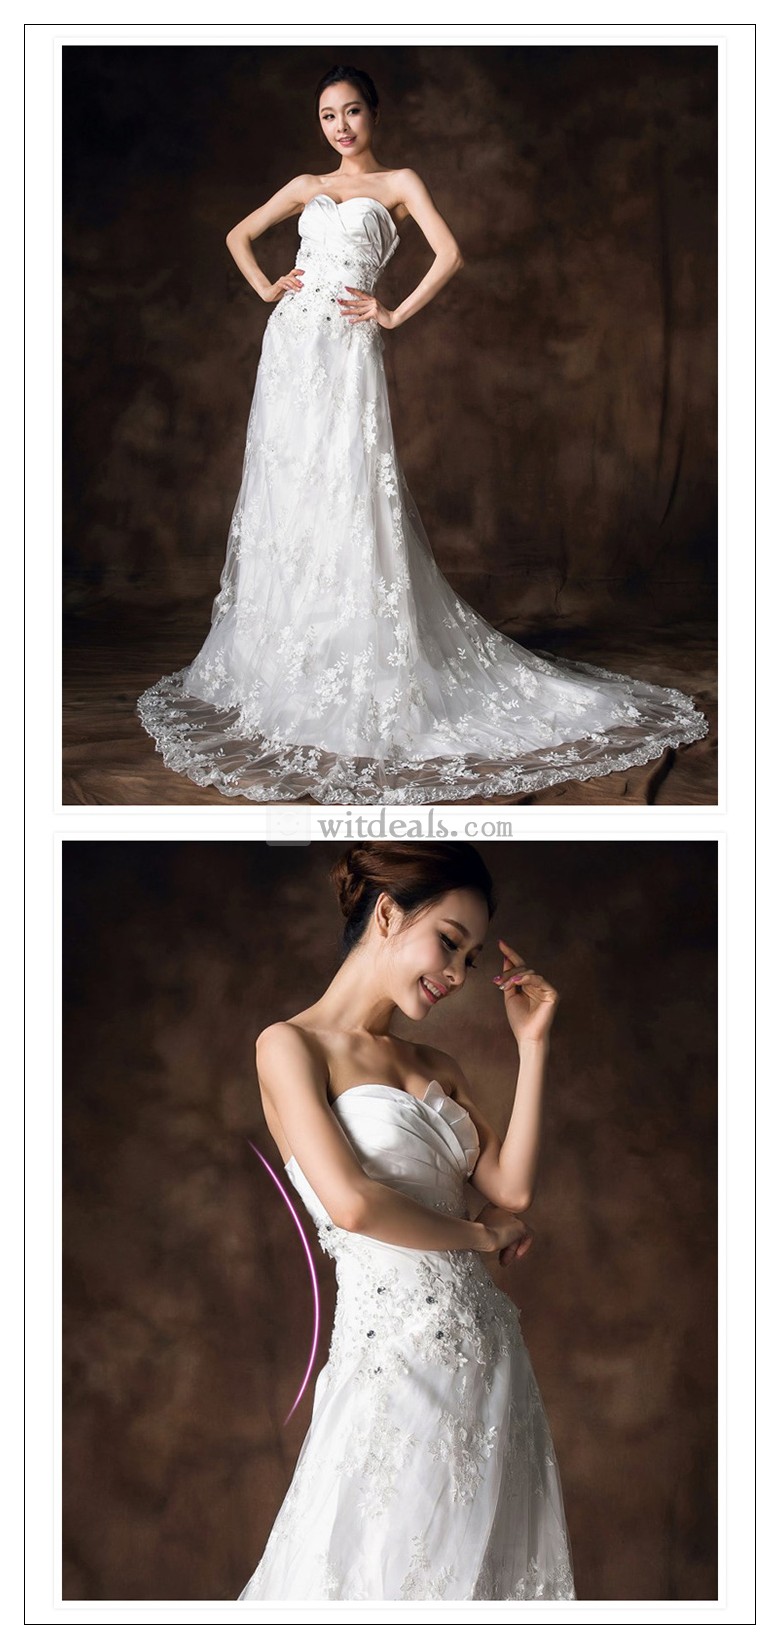 結婚式 ドレス 姫様ドレス ウェディングドレス 二次会 刺繍 ドレス 白 ビーズ エンパイアライン 真っ白 ミドルウェスト